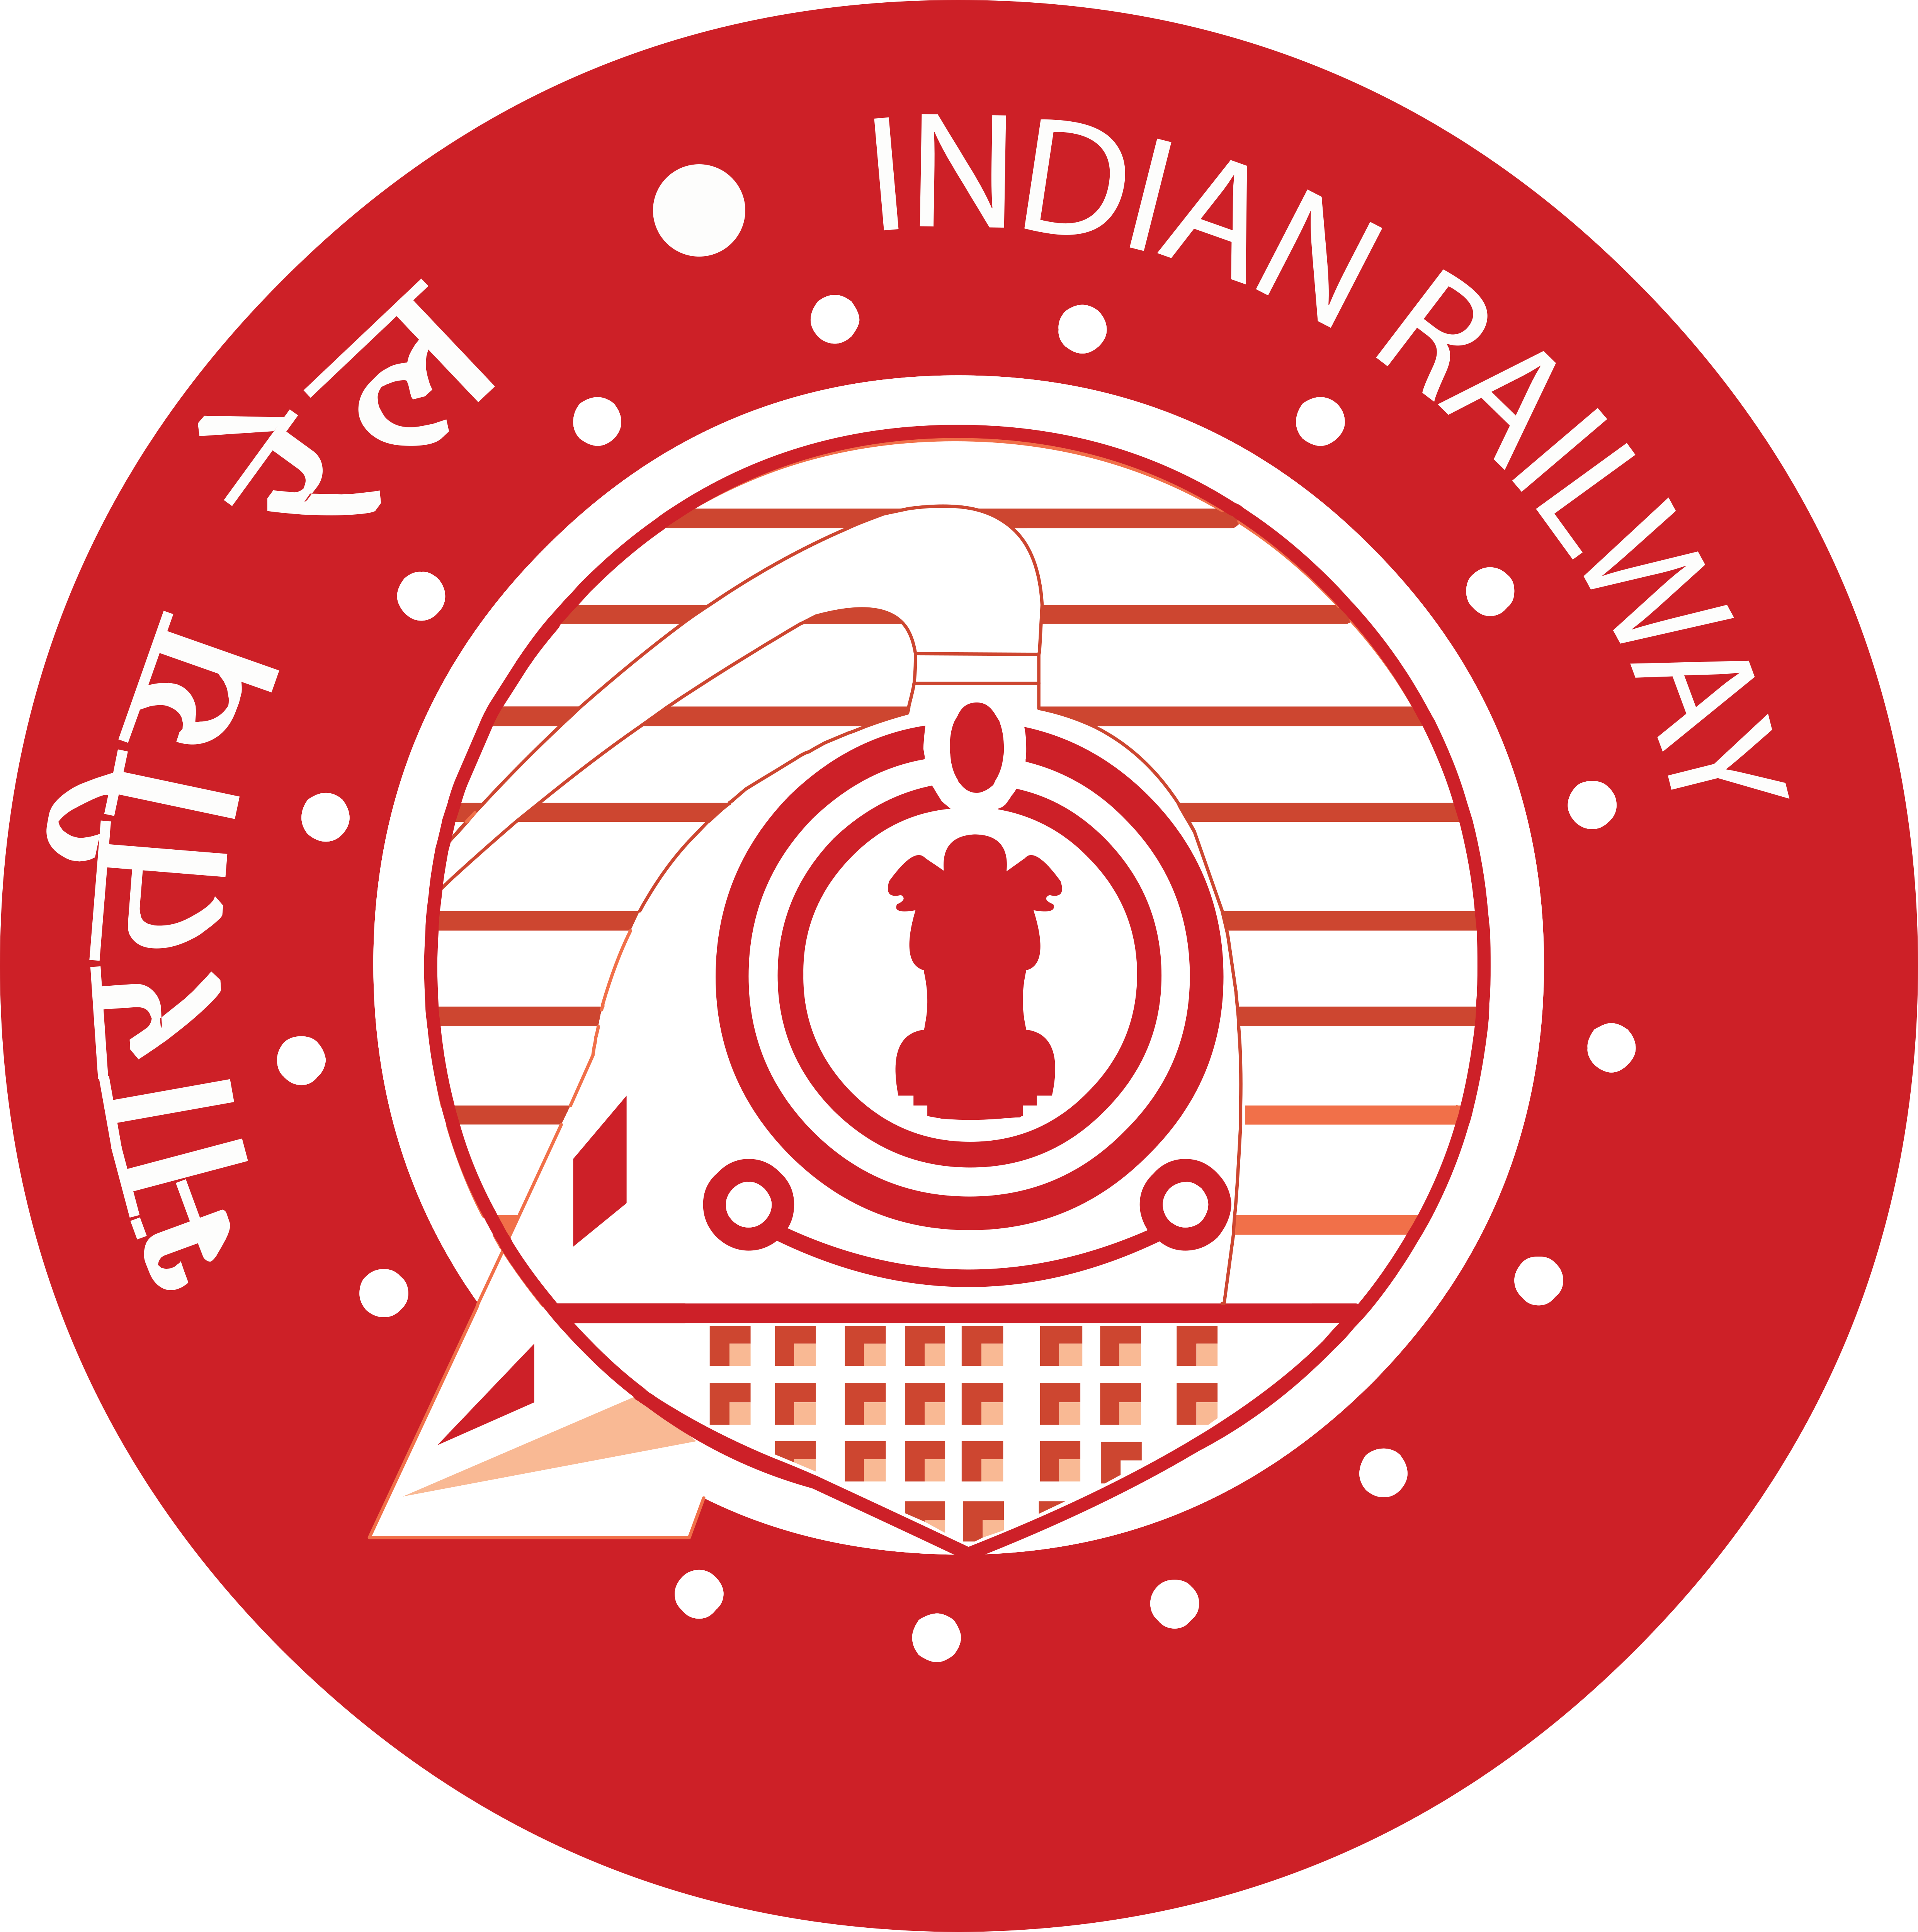 Indian Railway – Logos Download